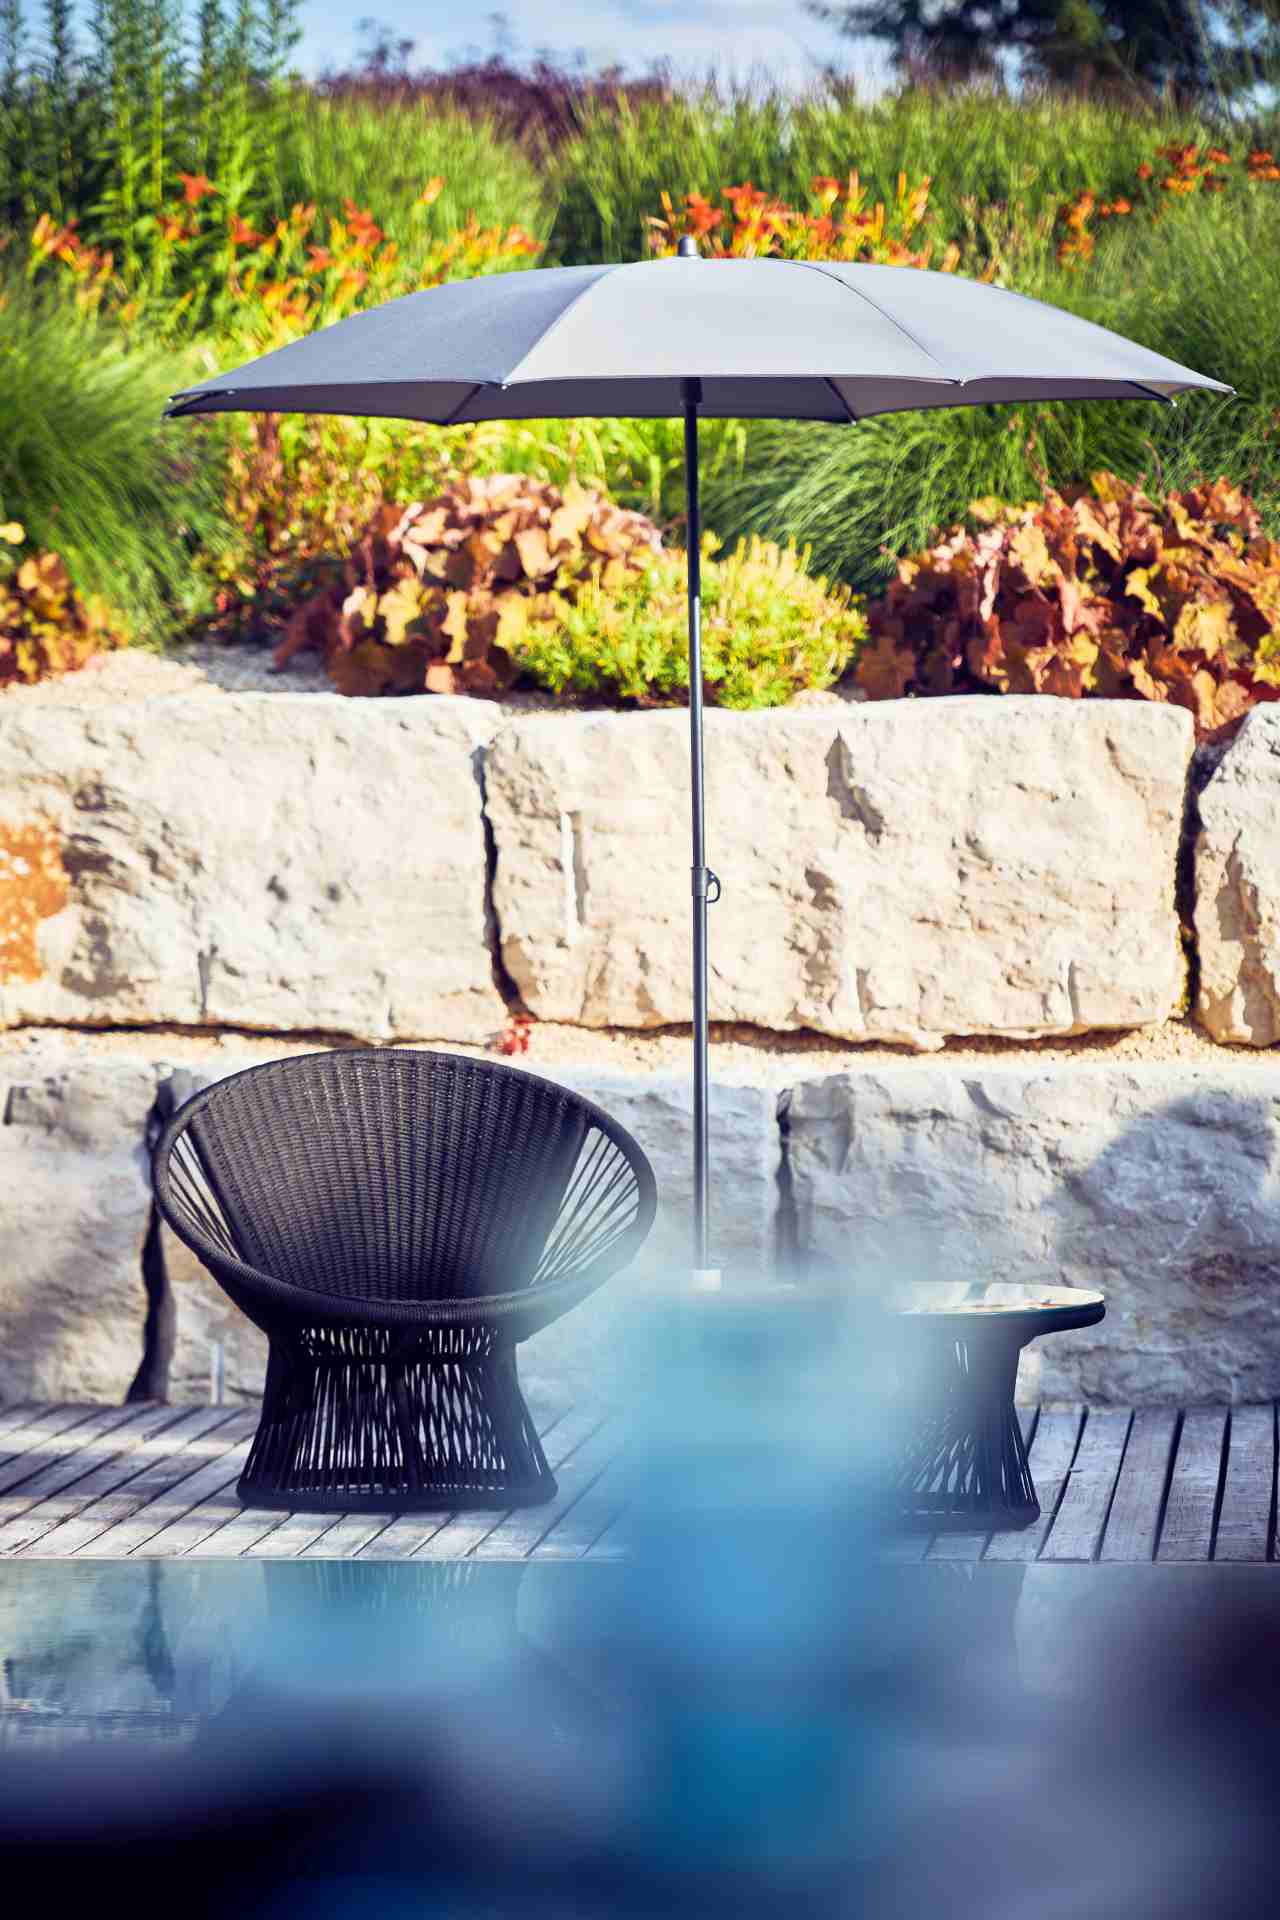 Der stilvolle Gartensessel Ray wurde von der Marke Jan Kurtz hergestellt und designet. Der Sessel ist Outdoor geeignet und ist in einem schwarzen Farbton.